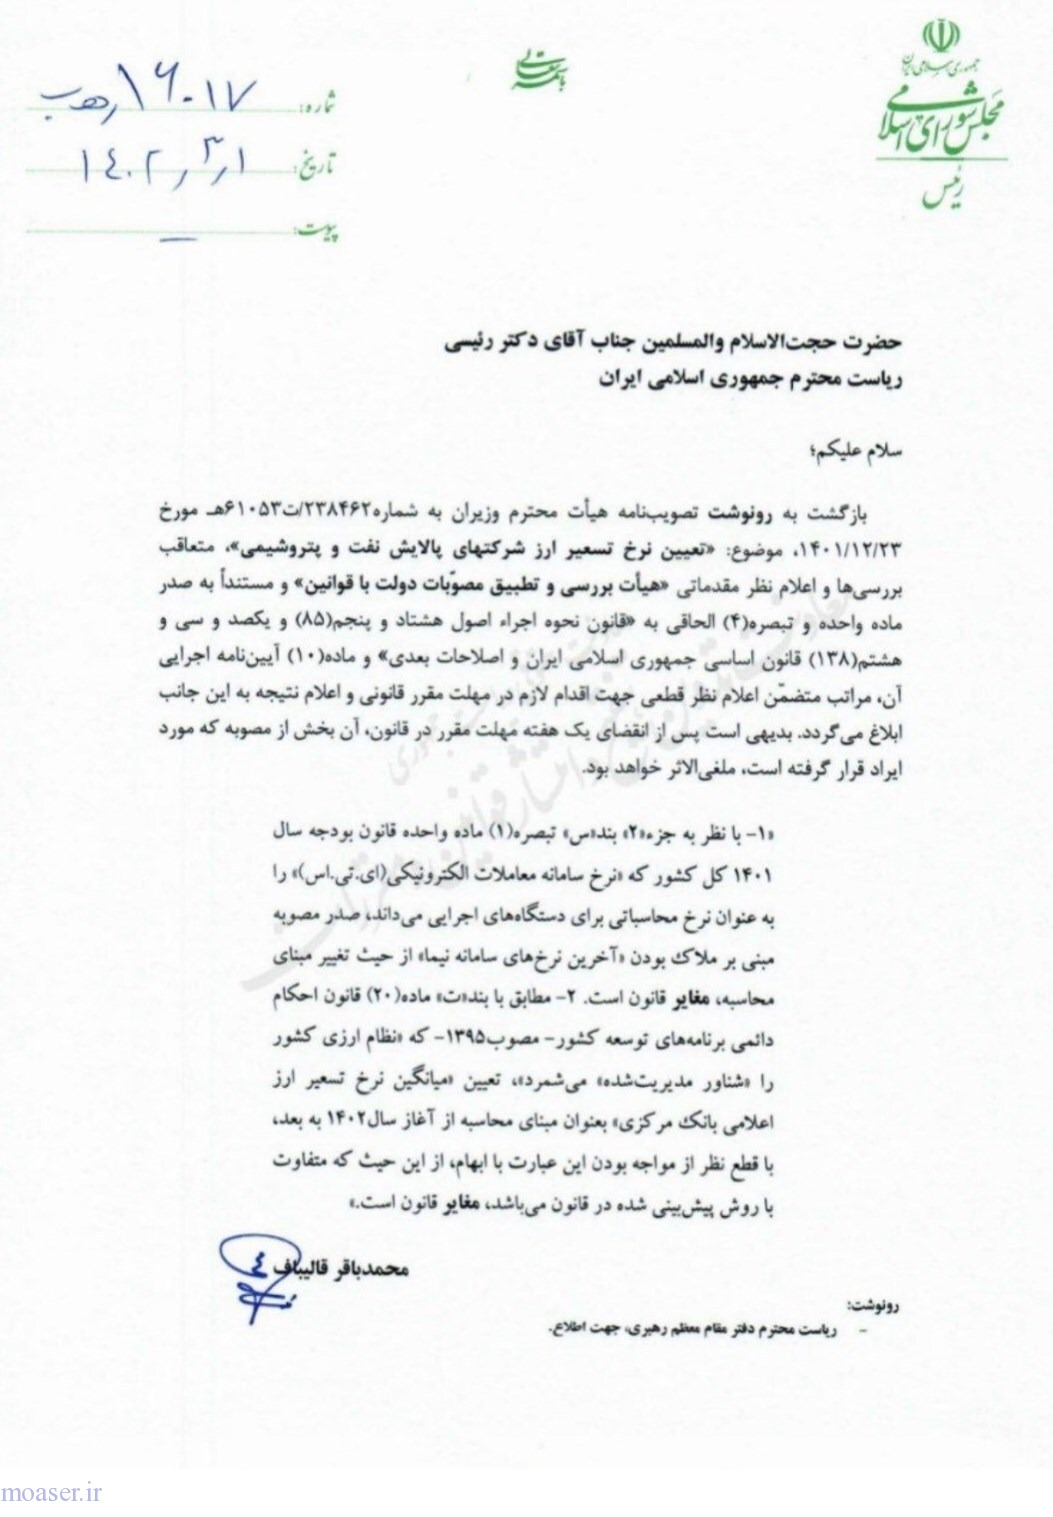 نامه رسمی قالیباف به رئیسی (+عکس)